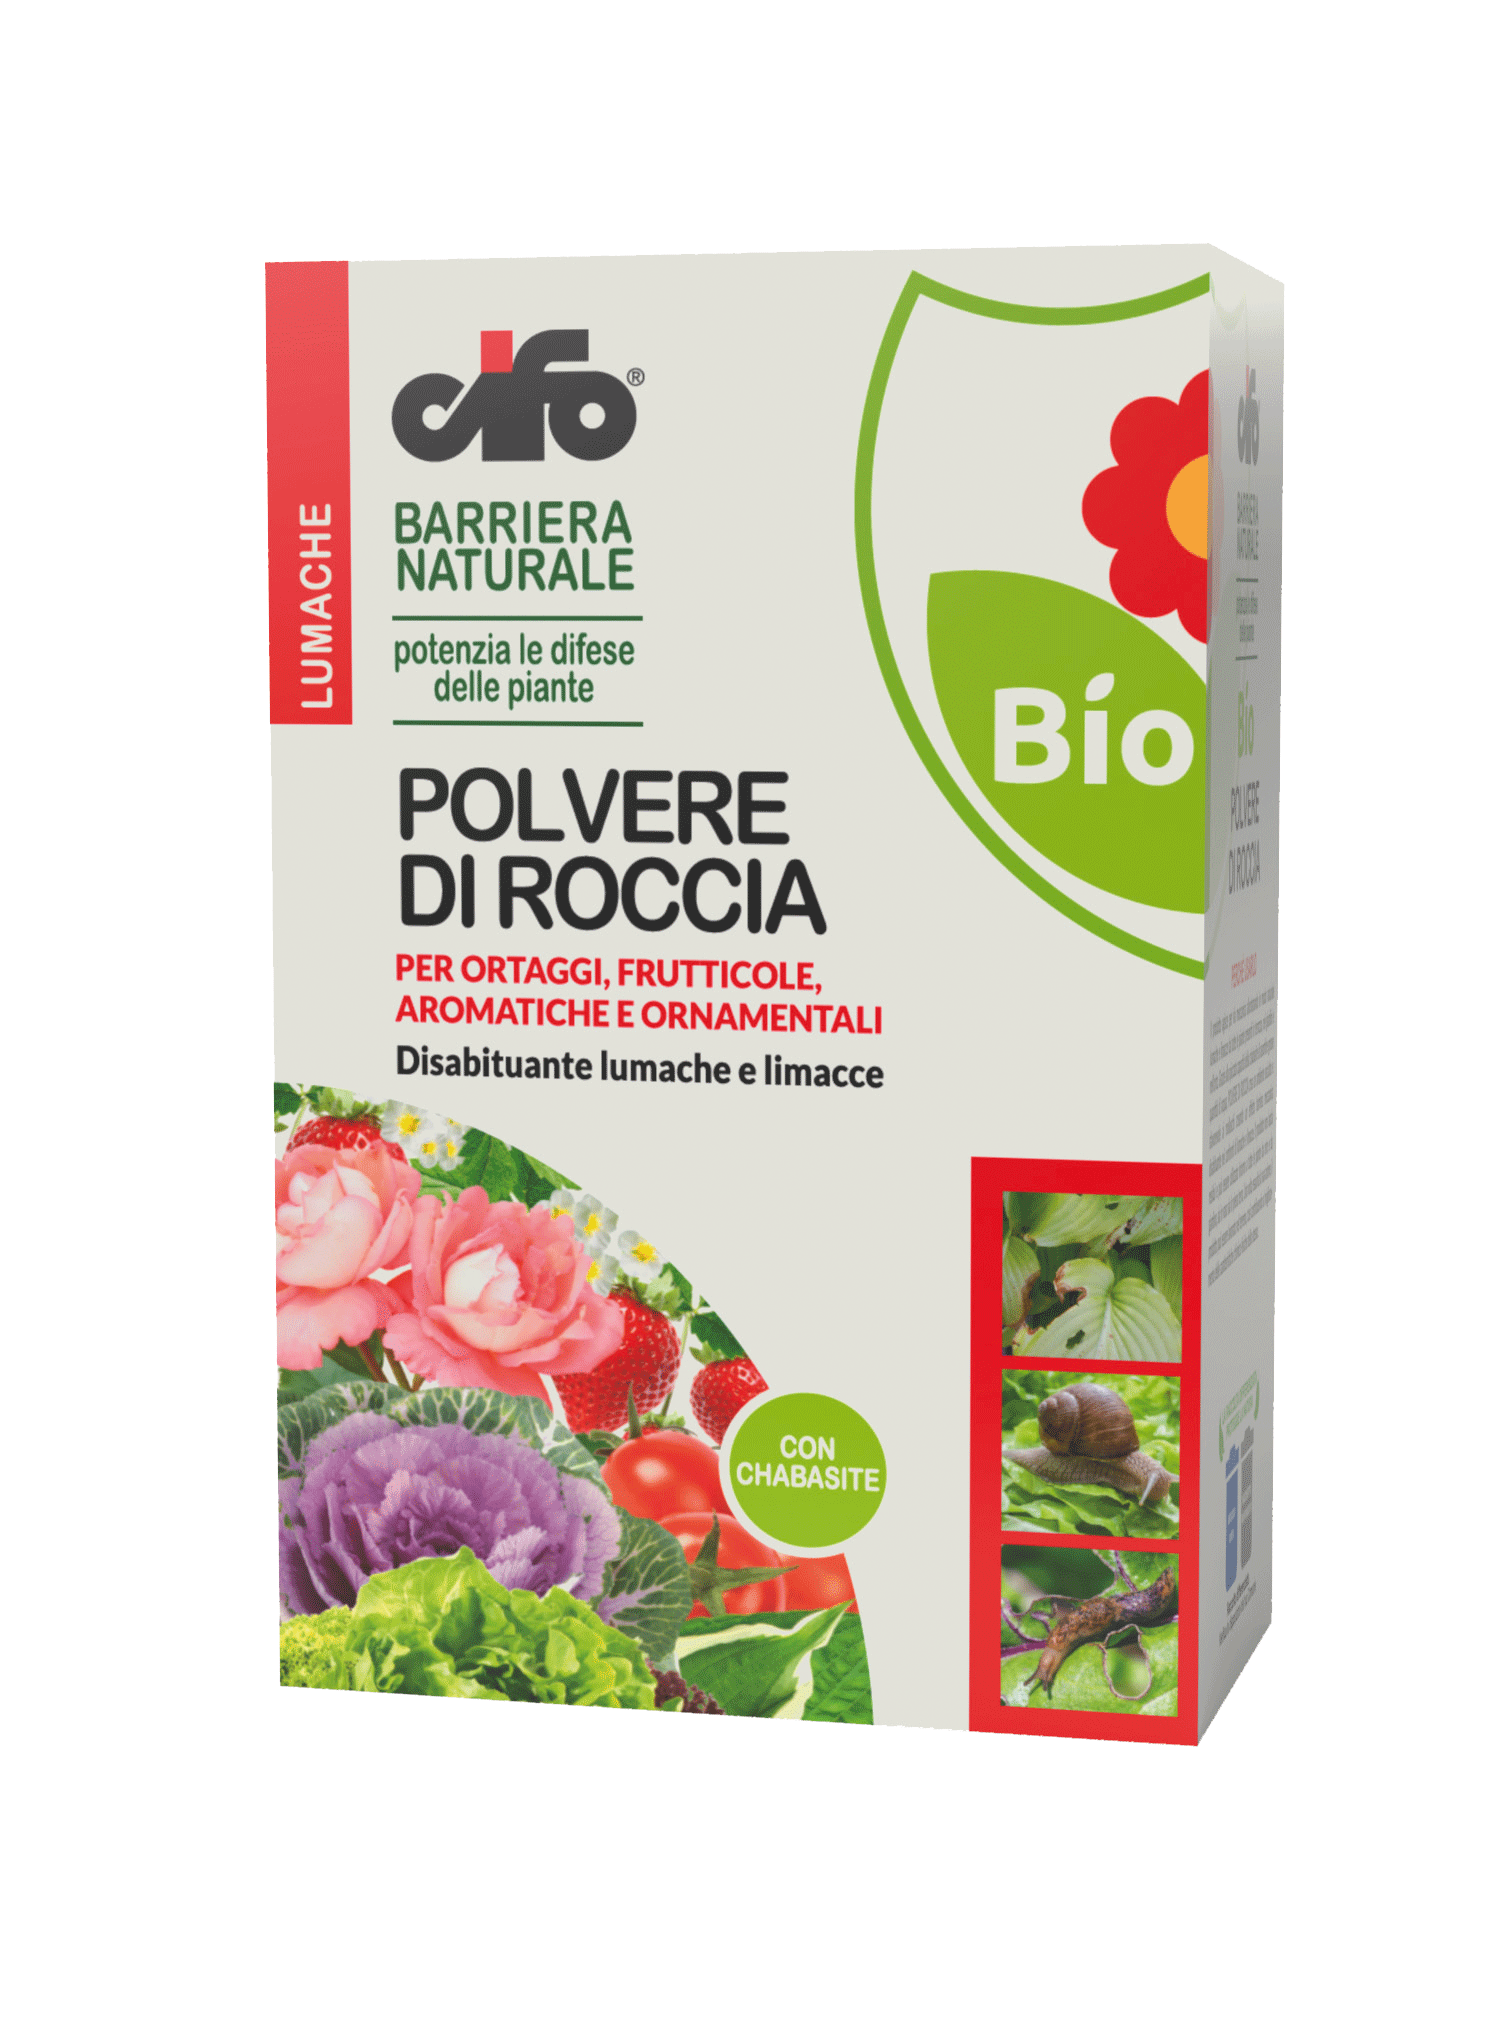 Lumachicida biologico polvere di roccia cifo 1,2 kg - Italy Green Life